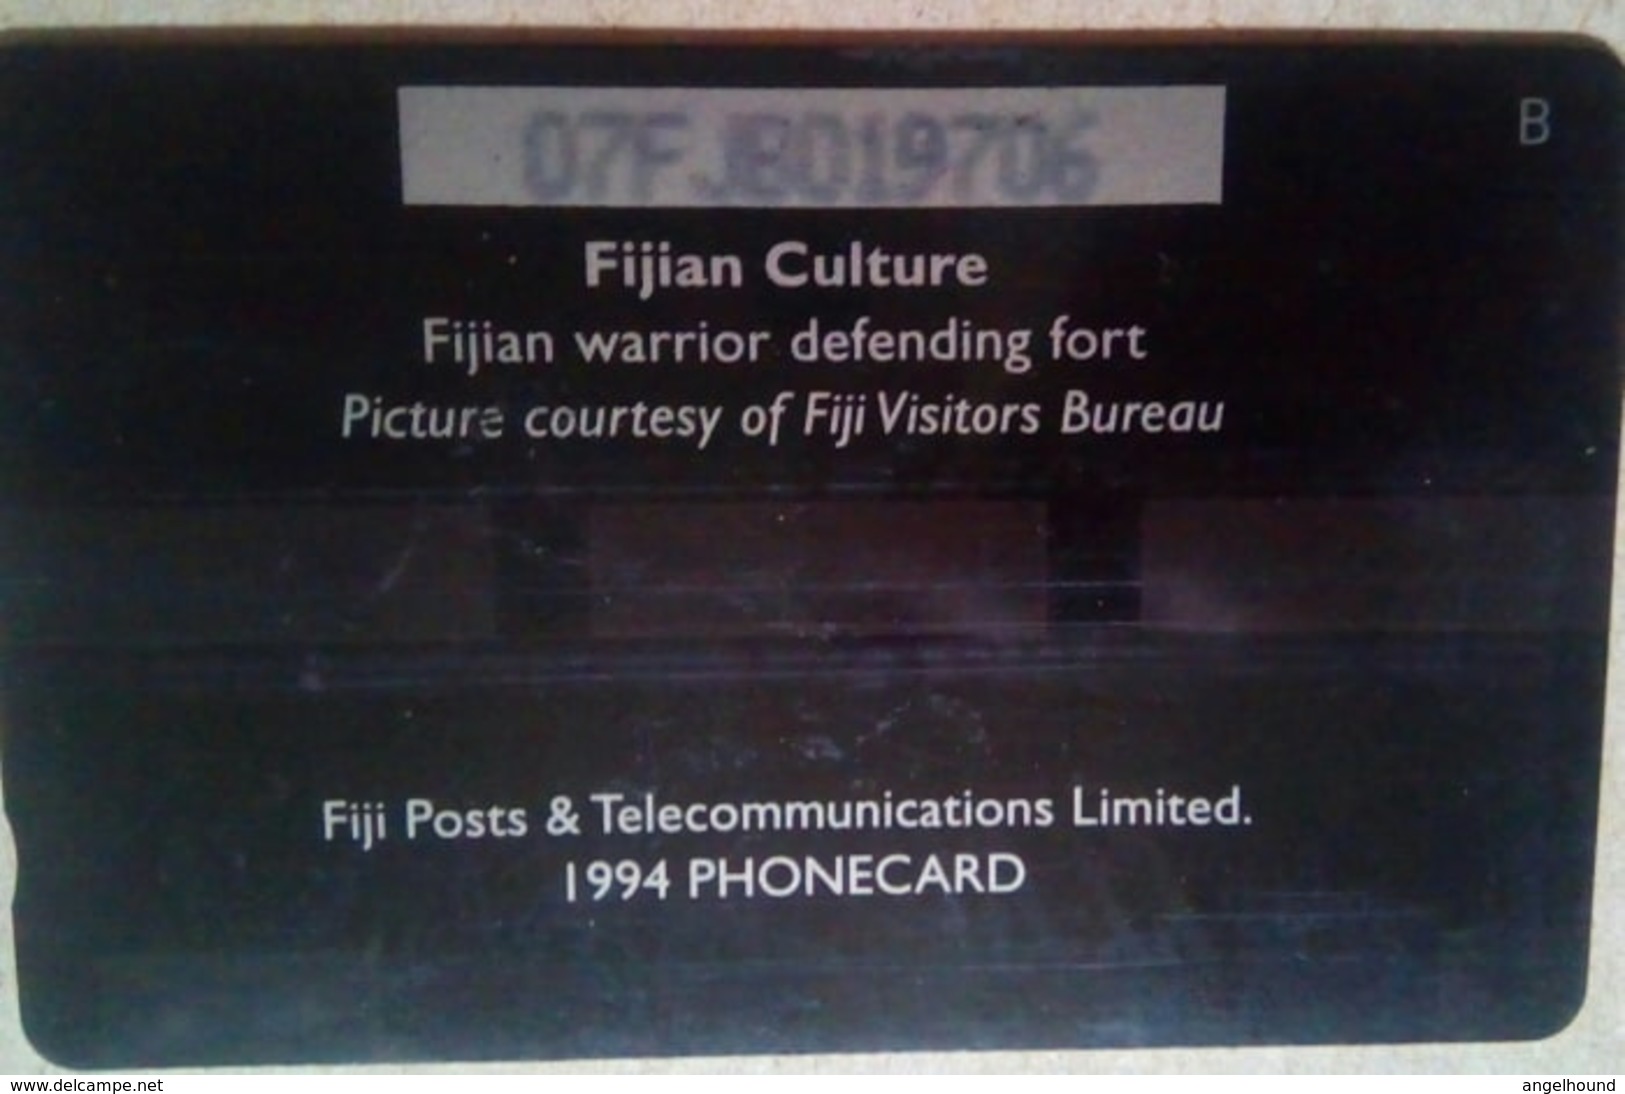 07FJB Fiji Culture $3 - Fidji